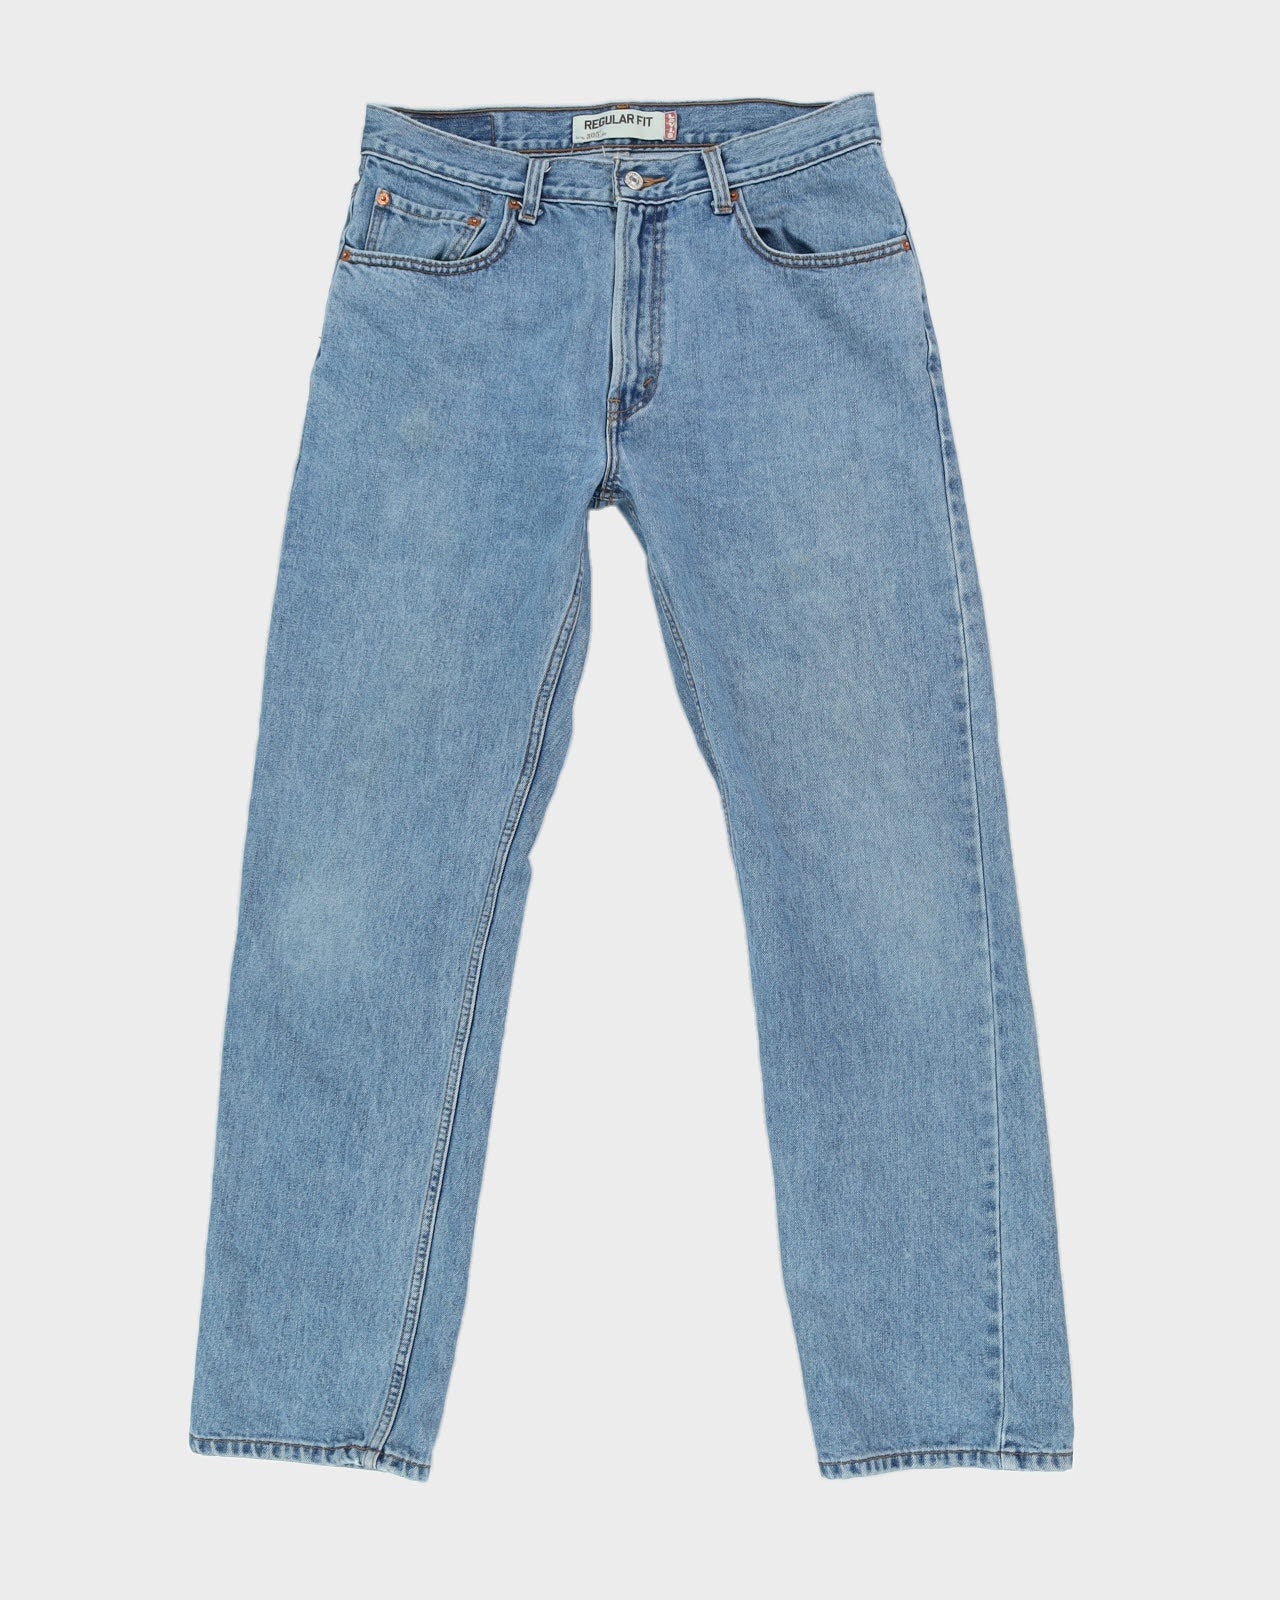 Levi's 505 Blue Jeans -W34 L 33